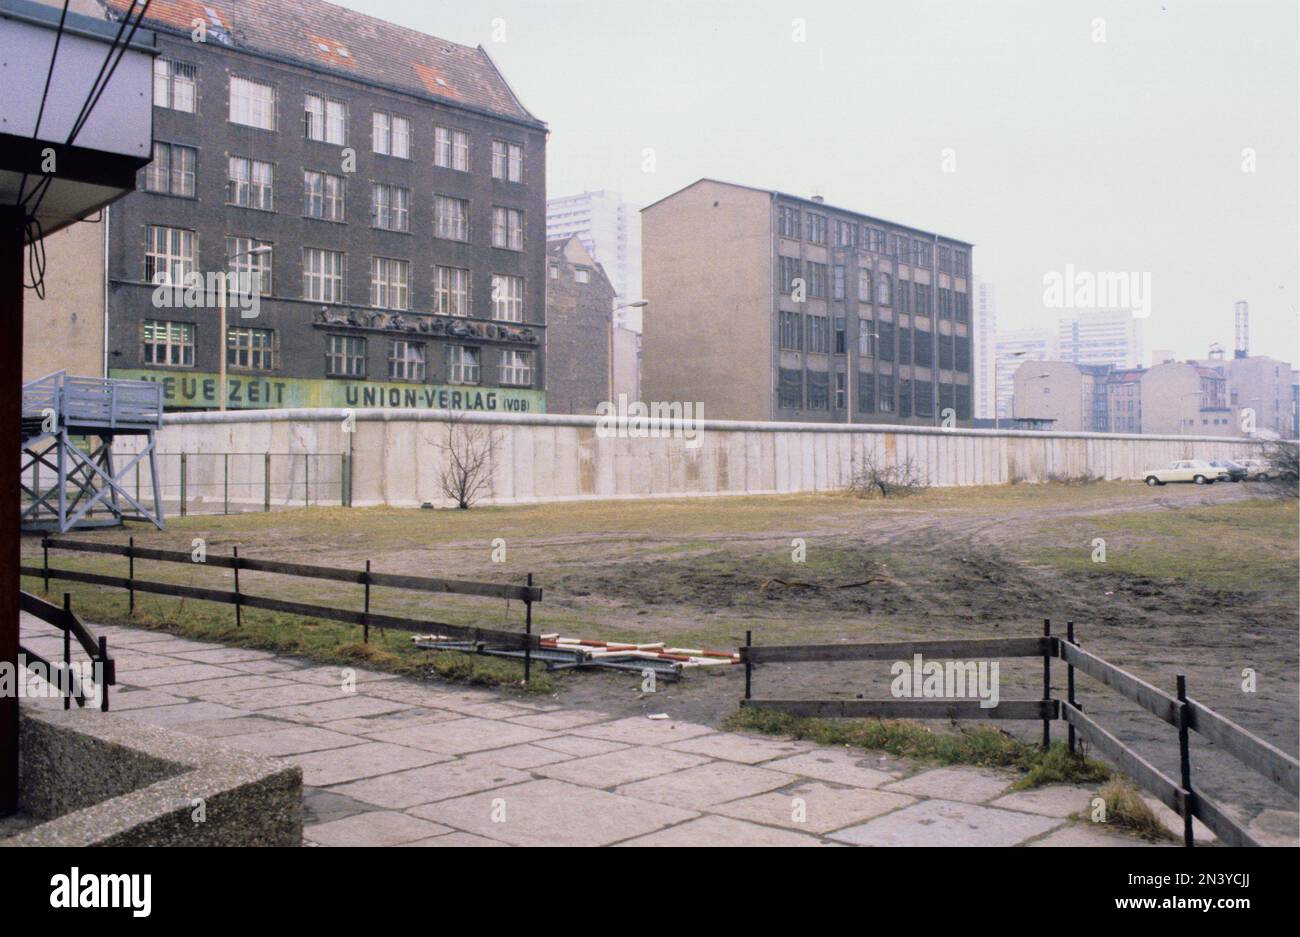 Il muro di Berlino. Una barriera di cemento sorvegliata che circondava Berlino Ovest dal 1961 al 1989, separandola da Berlino Est e Germania Est. La costruzione del muro di Berlino iniziò nel 1961. Berlino Ovest era un'enclave politica che comprendeva la parte occidentale di Berlino durante gli anni della guerra fredda. Foto scattata a 1978 del muro di Berlino e dei suoi elementi costruttivi in cemento. Foto Stock